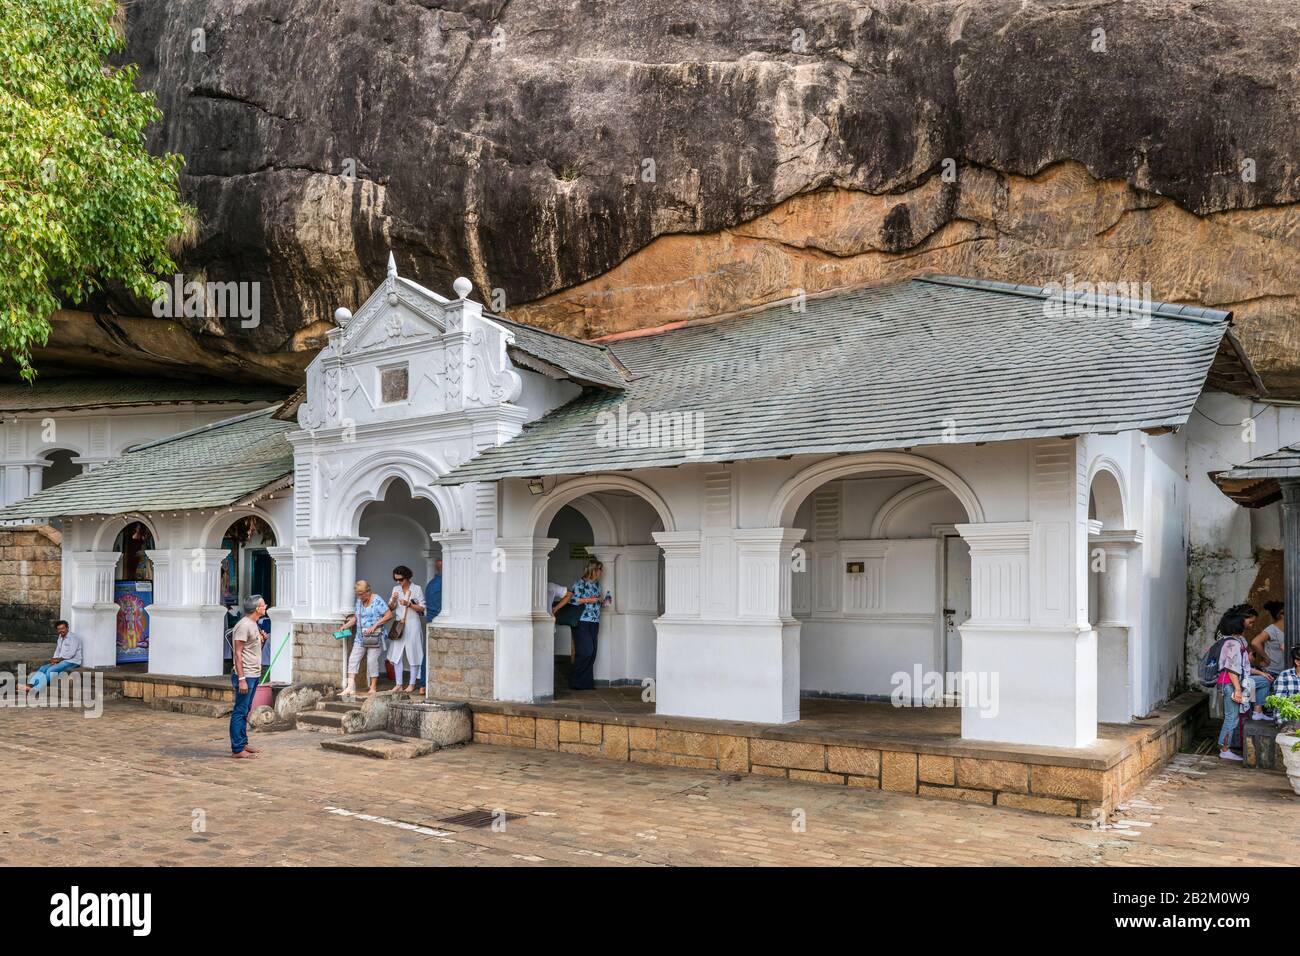 Sri Lanka's Cave temples, sanctuaires cinq richement décorées de 'Dambulla Rock et temples de caverne" qui s'asseoir sous un énorme rocher. Les temples c Banque D'Images